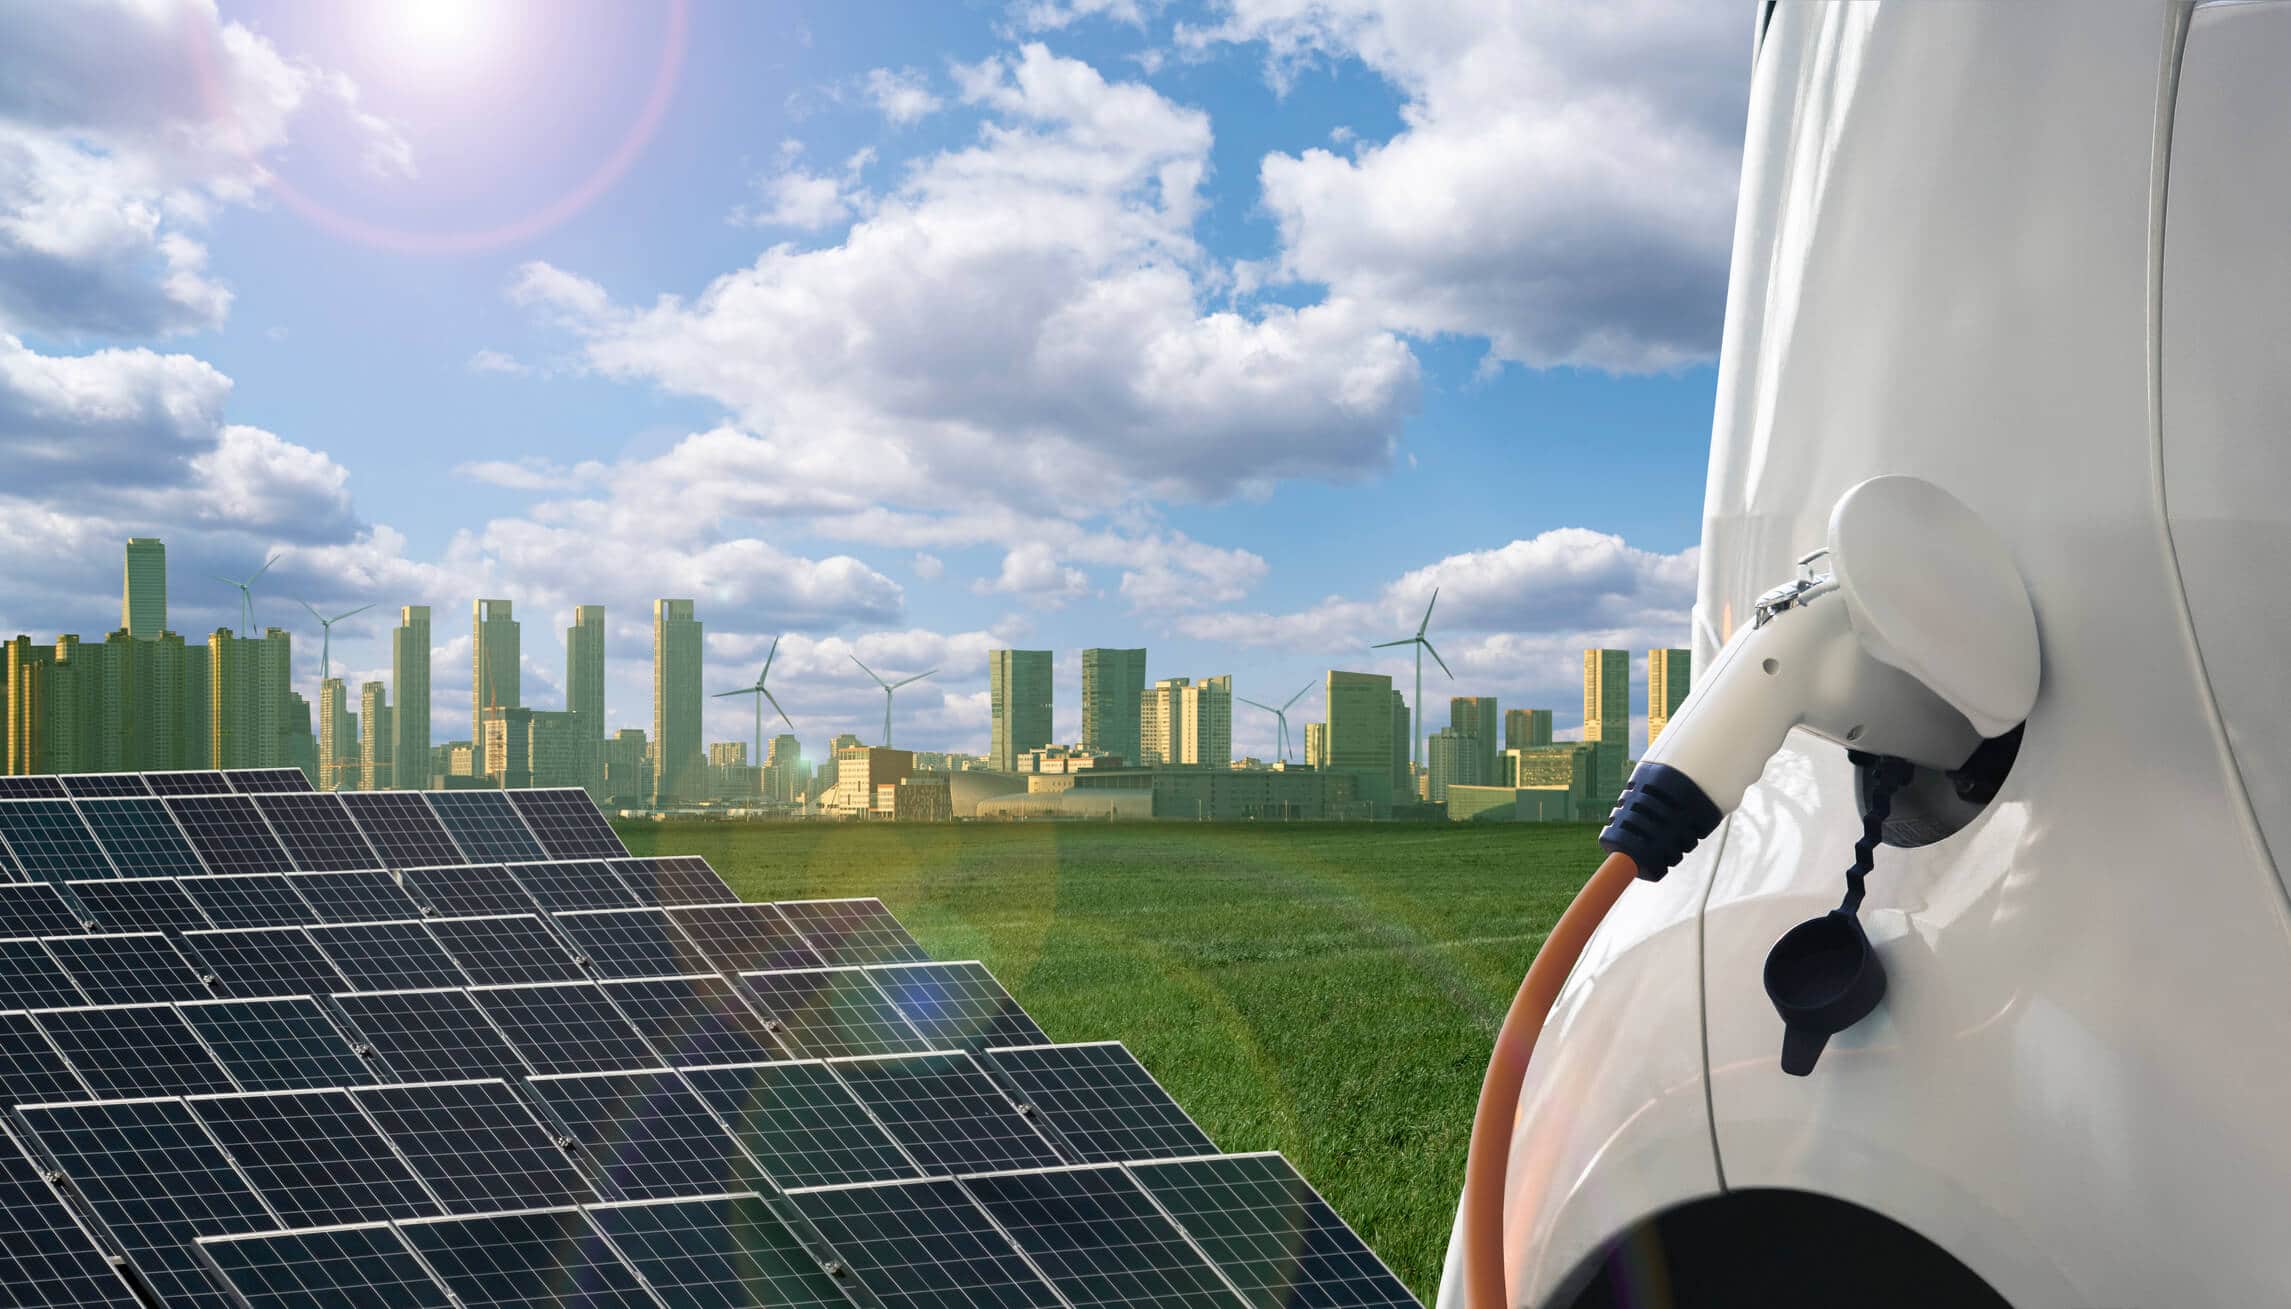 Bilde av solcellepaner, elbil og storby